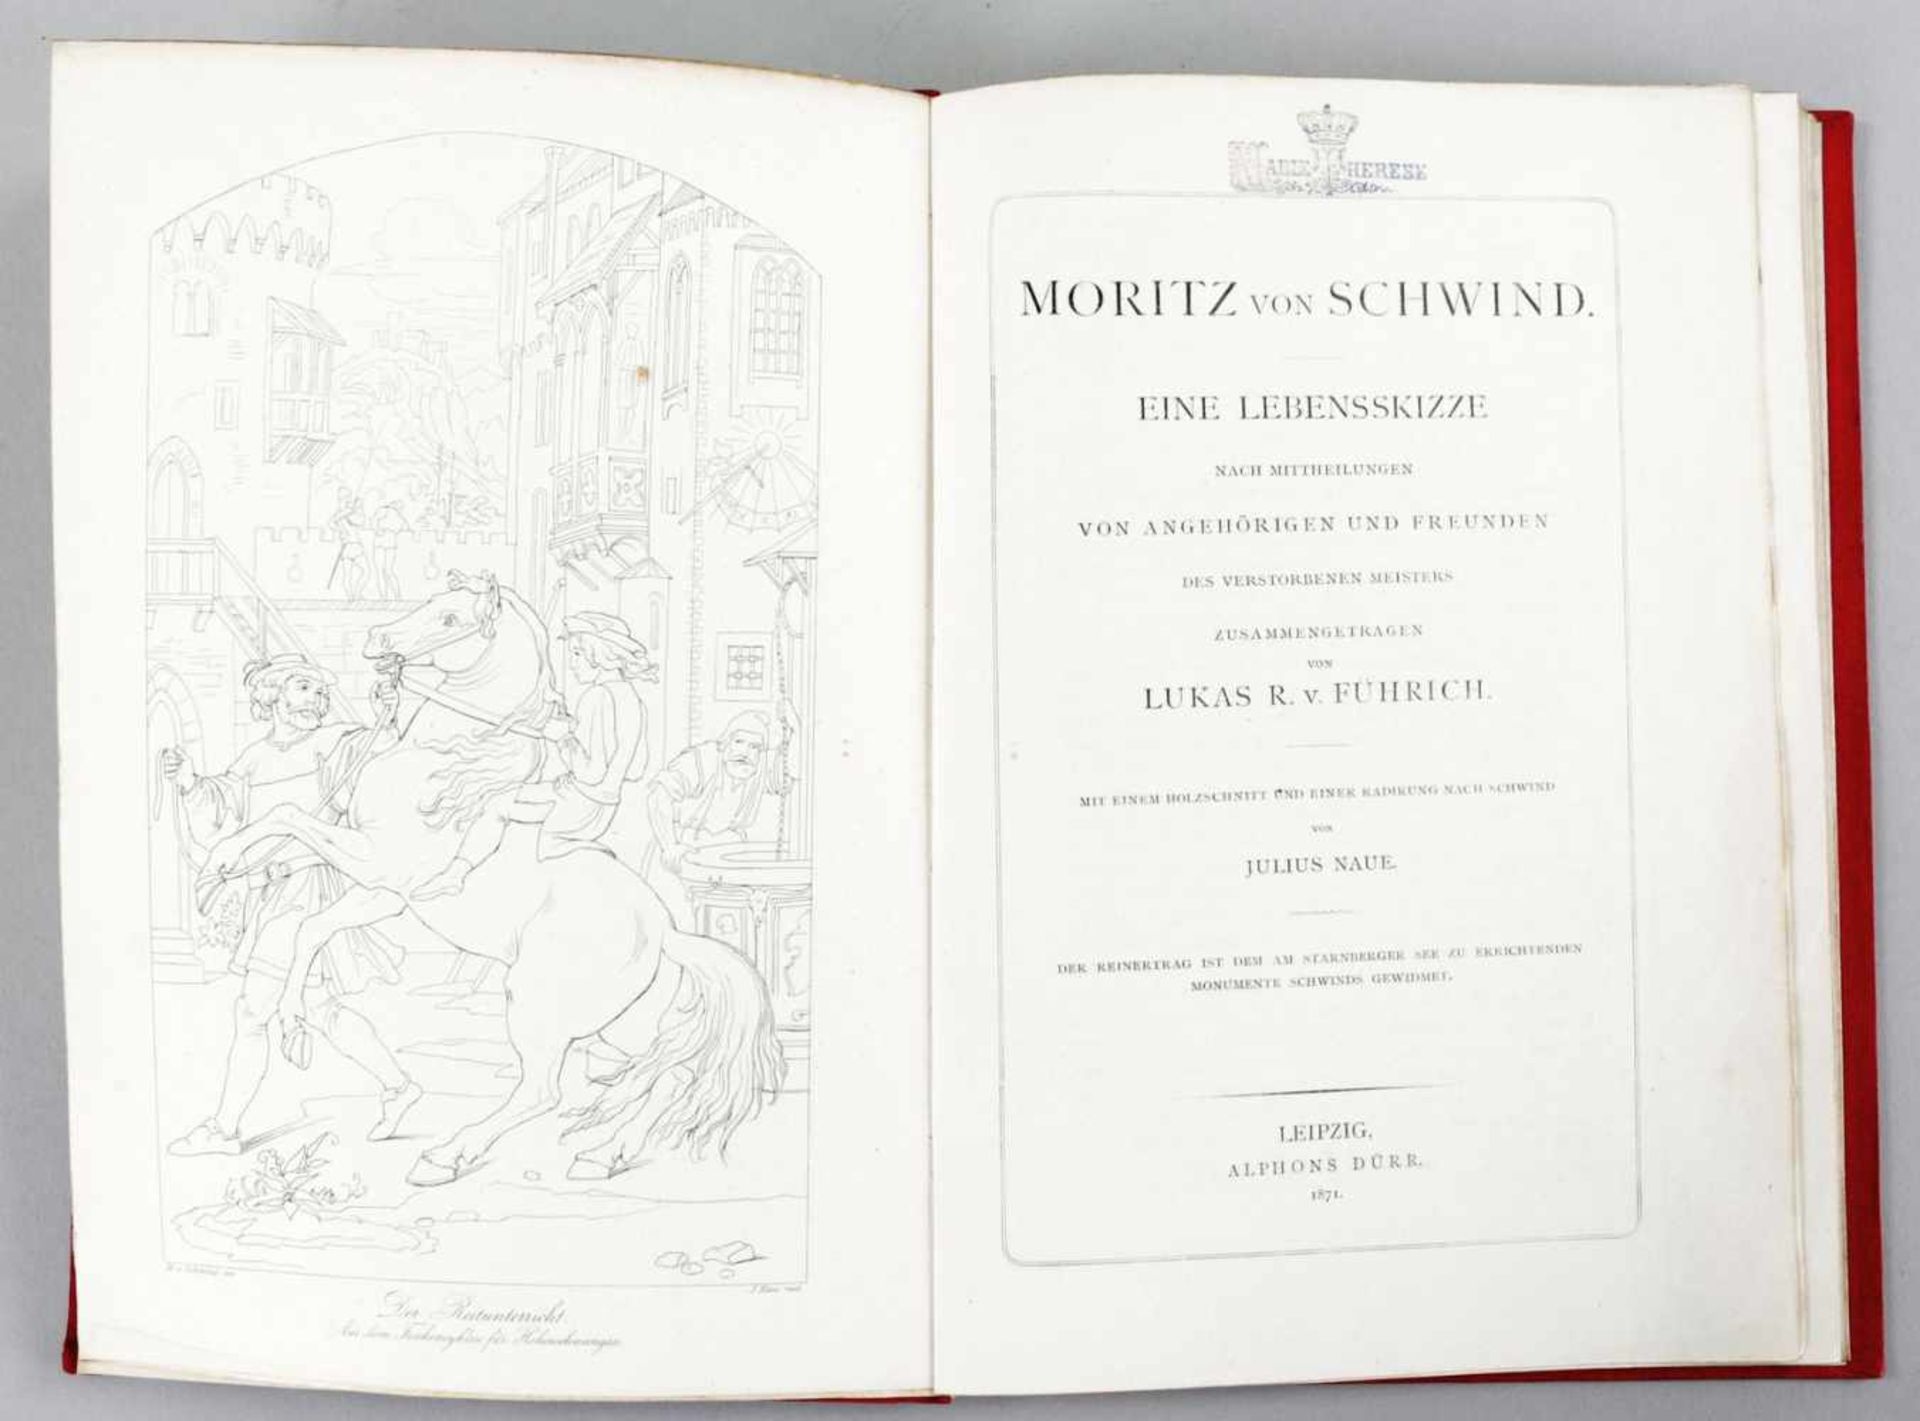 Buch "Moritz von Schwind" a.d. Bibliothek der Marie ThereseLeipzig, 1871 Lukas R. v. Führich, Moritz - Bild 2 aus 2